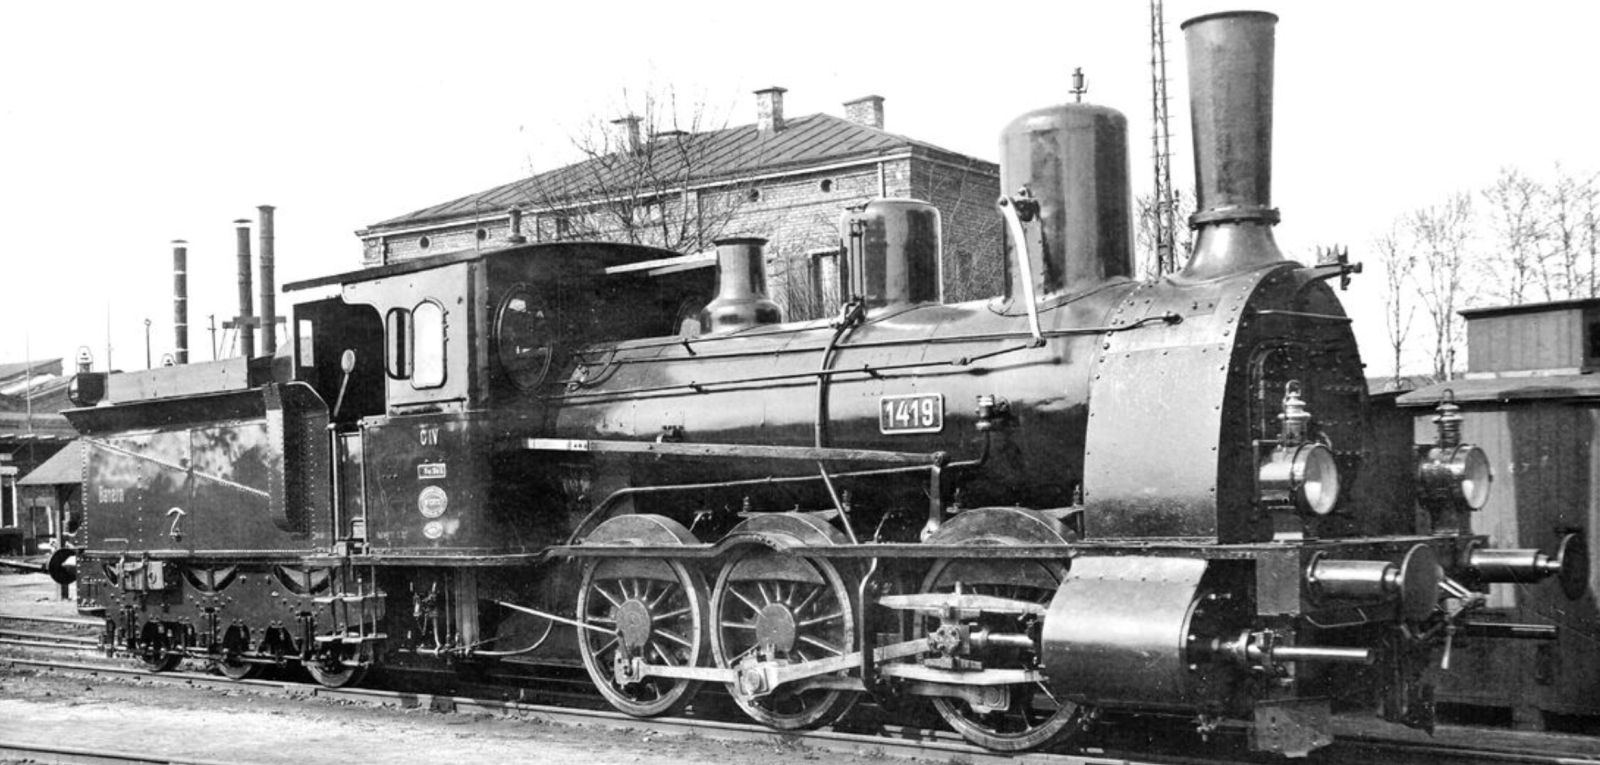 No. 1419 in 1922 in Munich